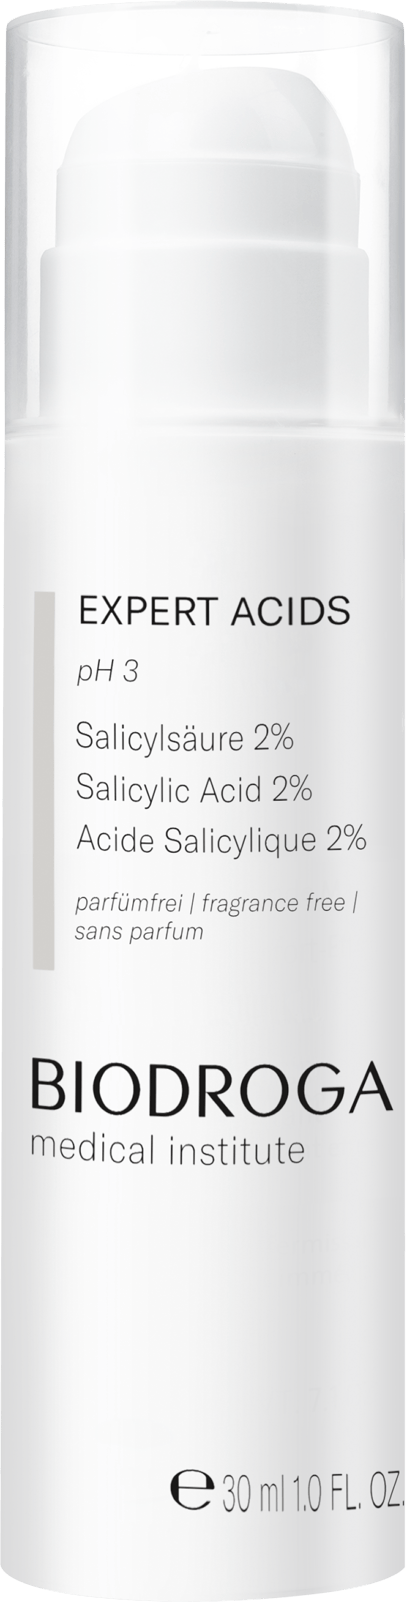 SÄURE PEELING Salicylsäure 2%